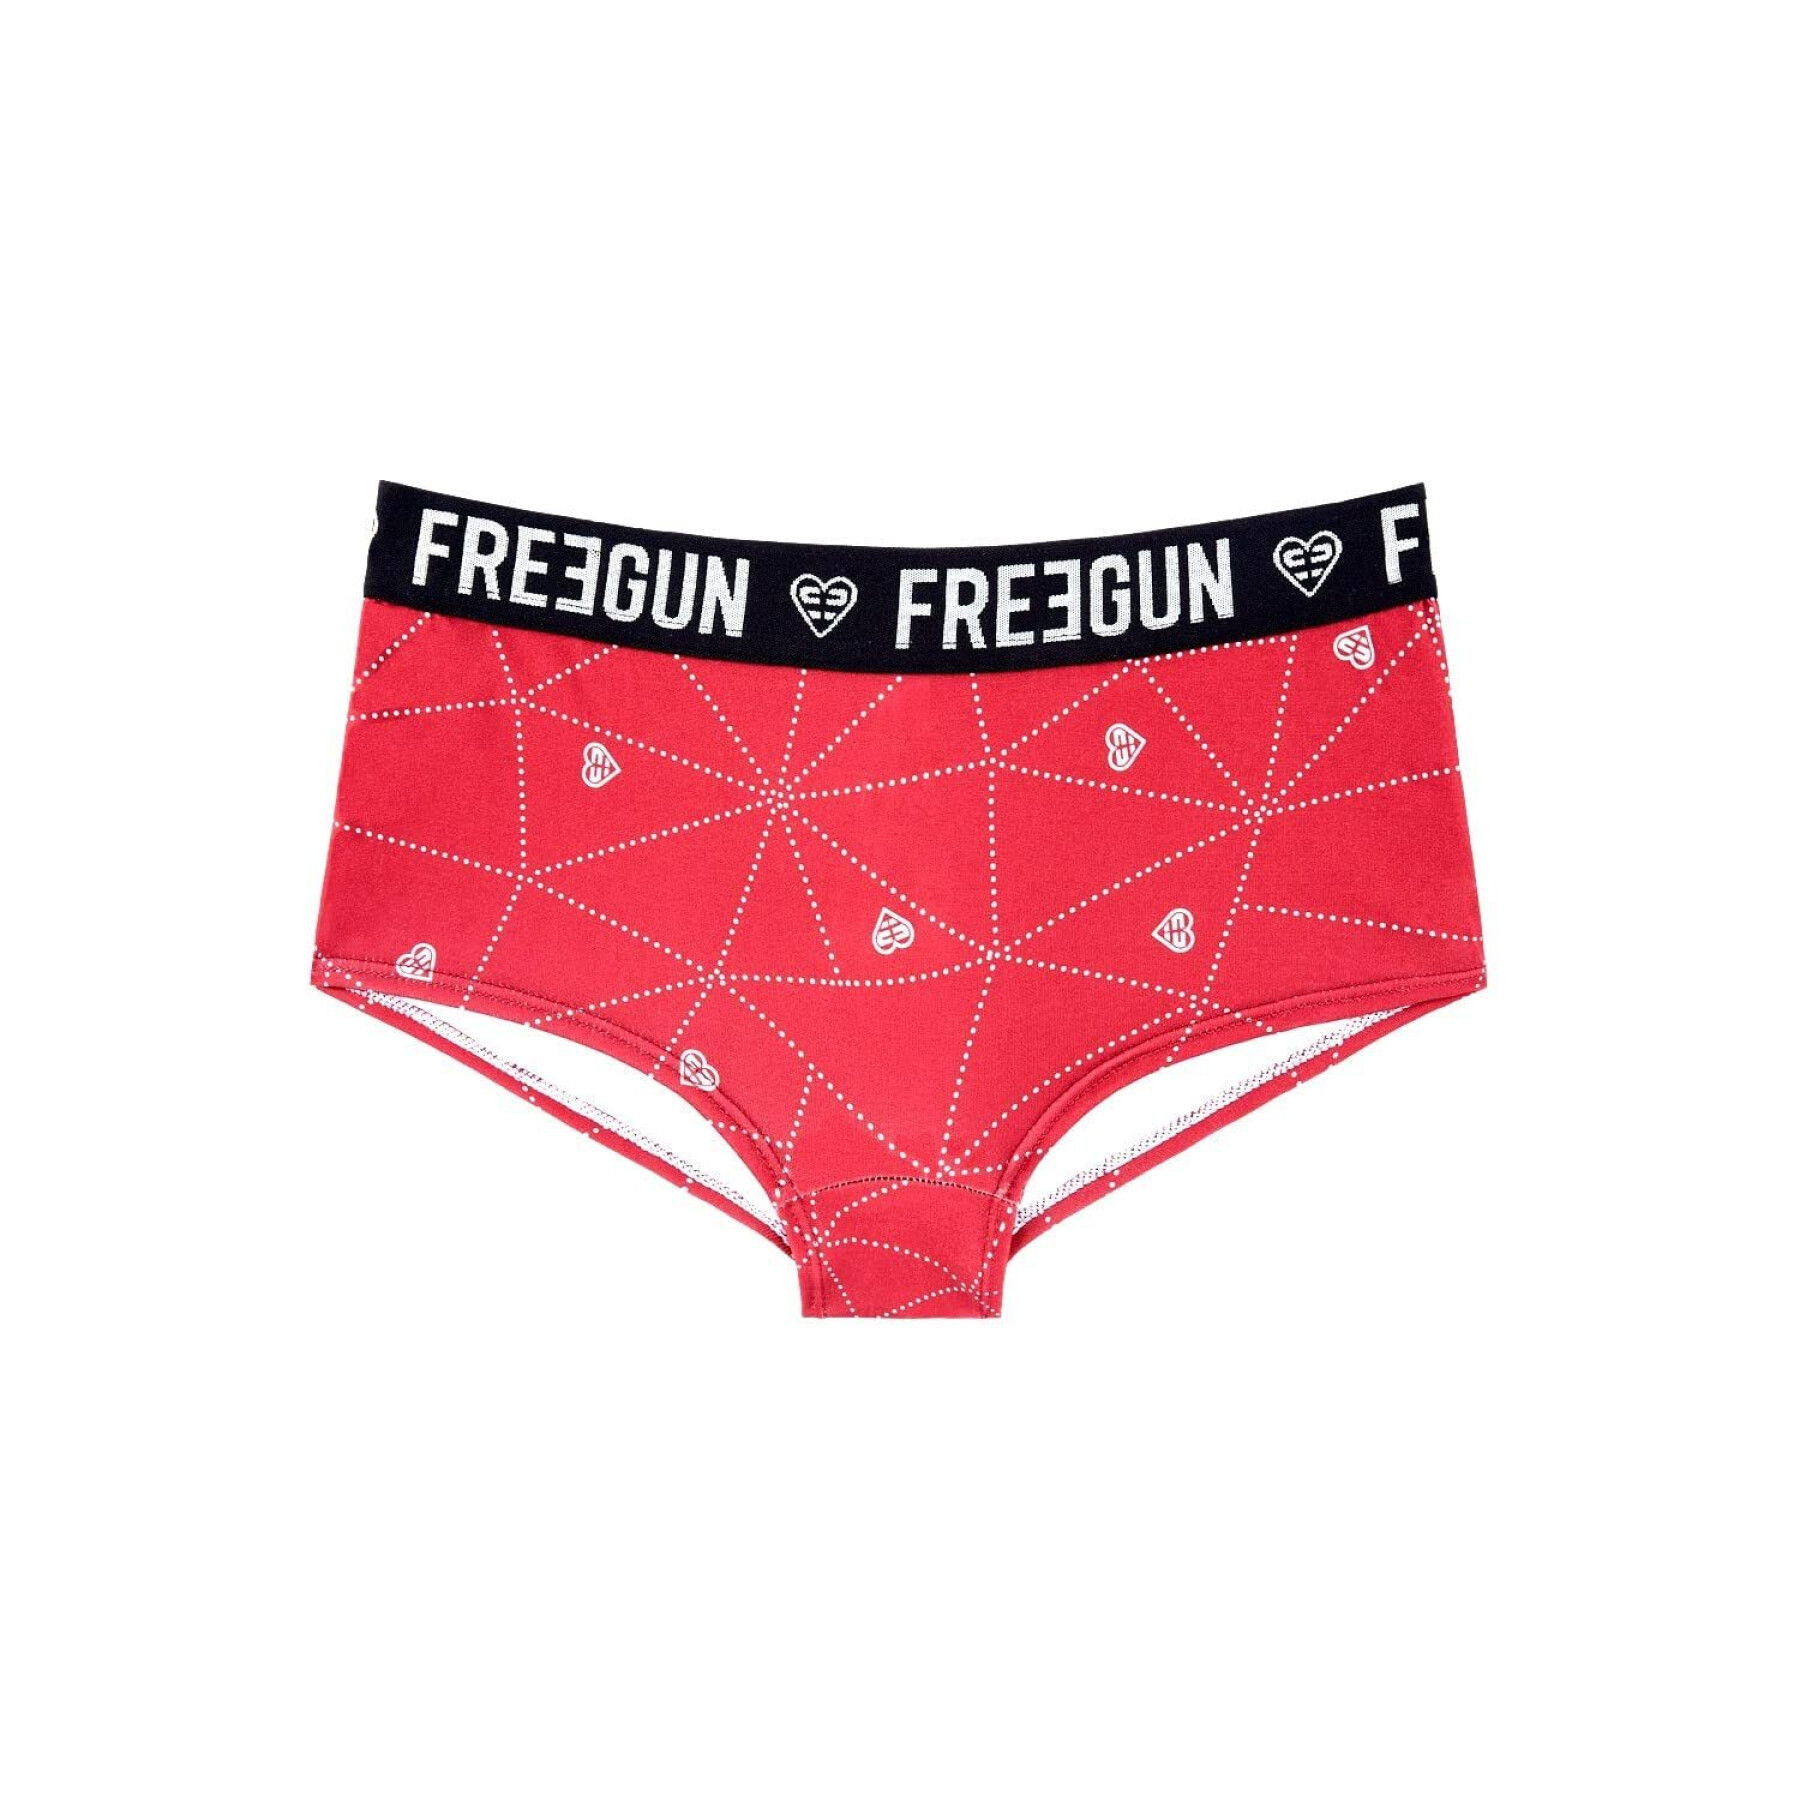 Mikrofiber-shorts för flickor Freegun Scandinav